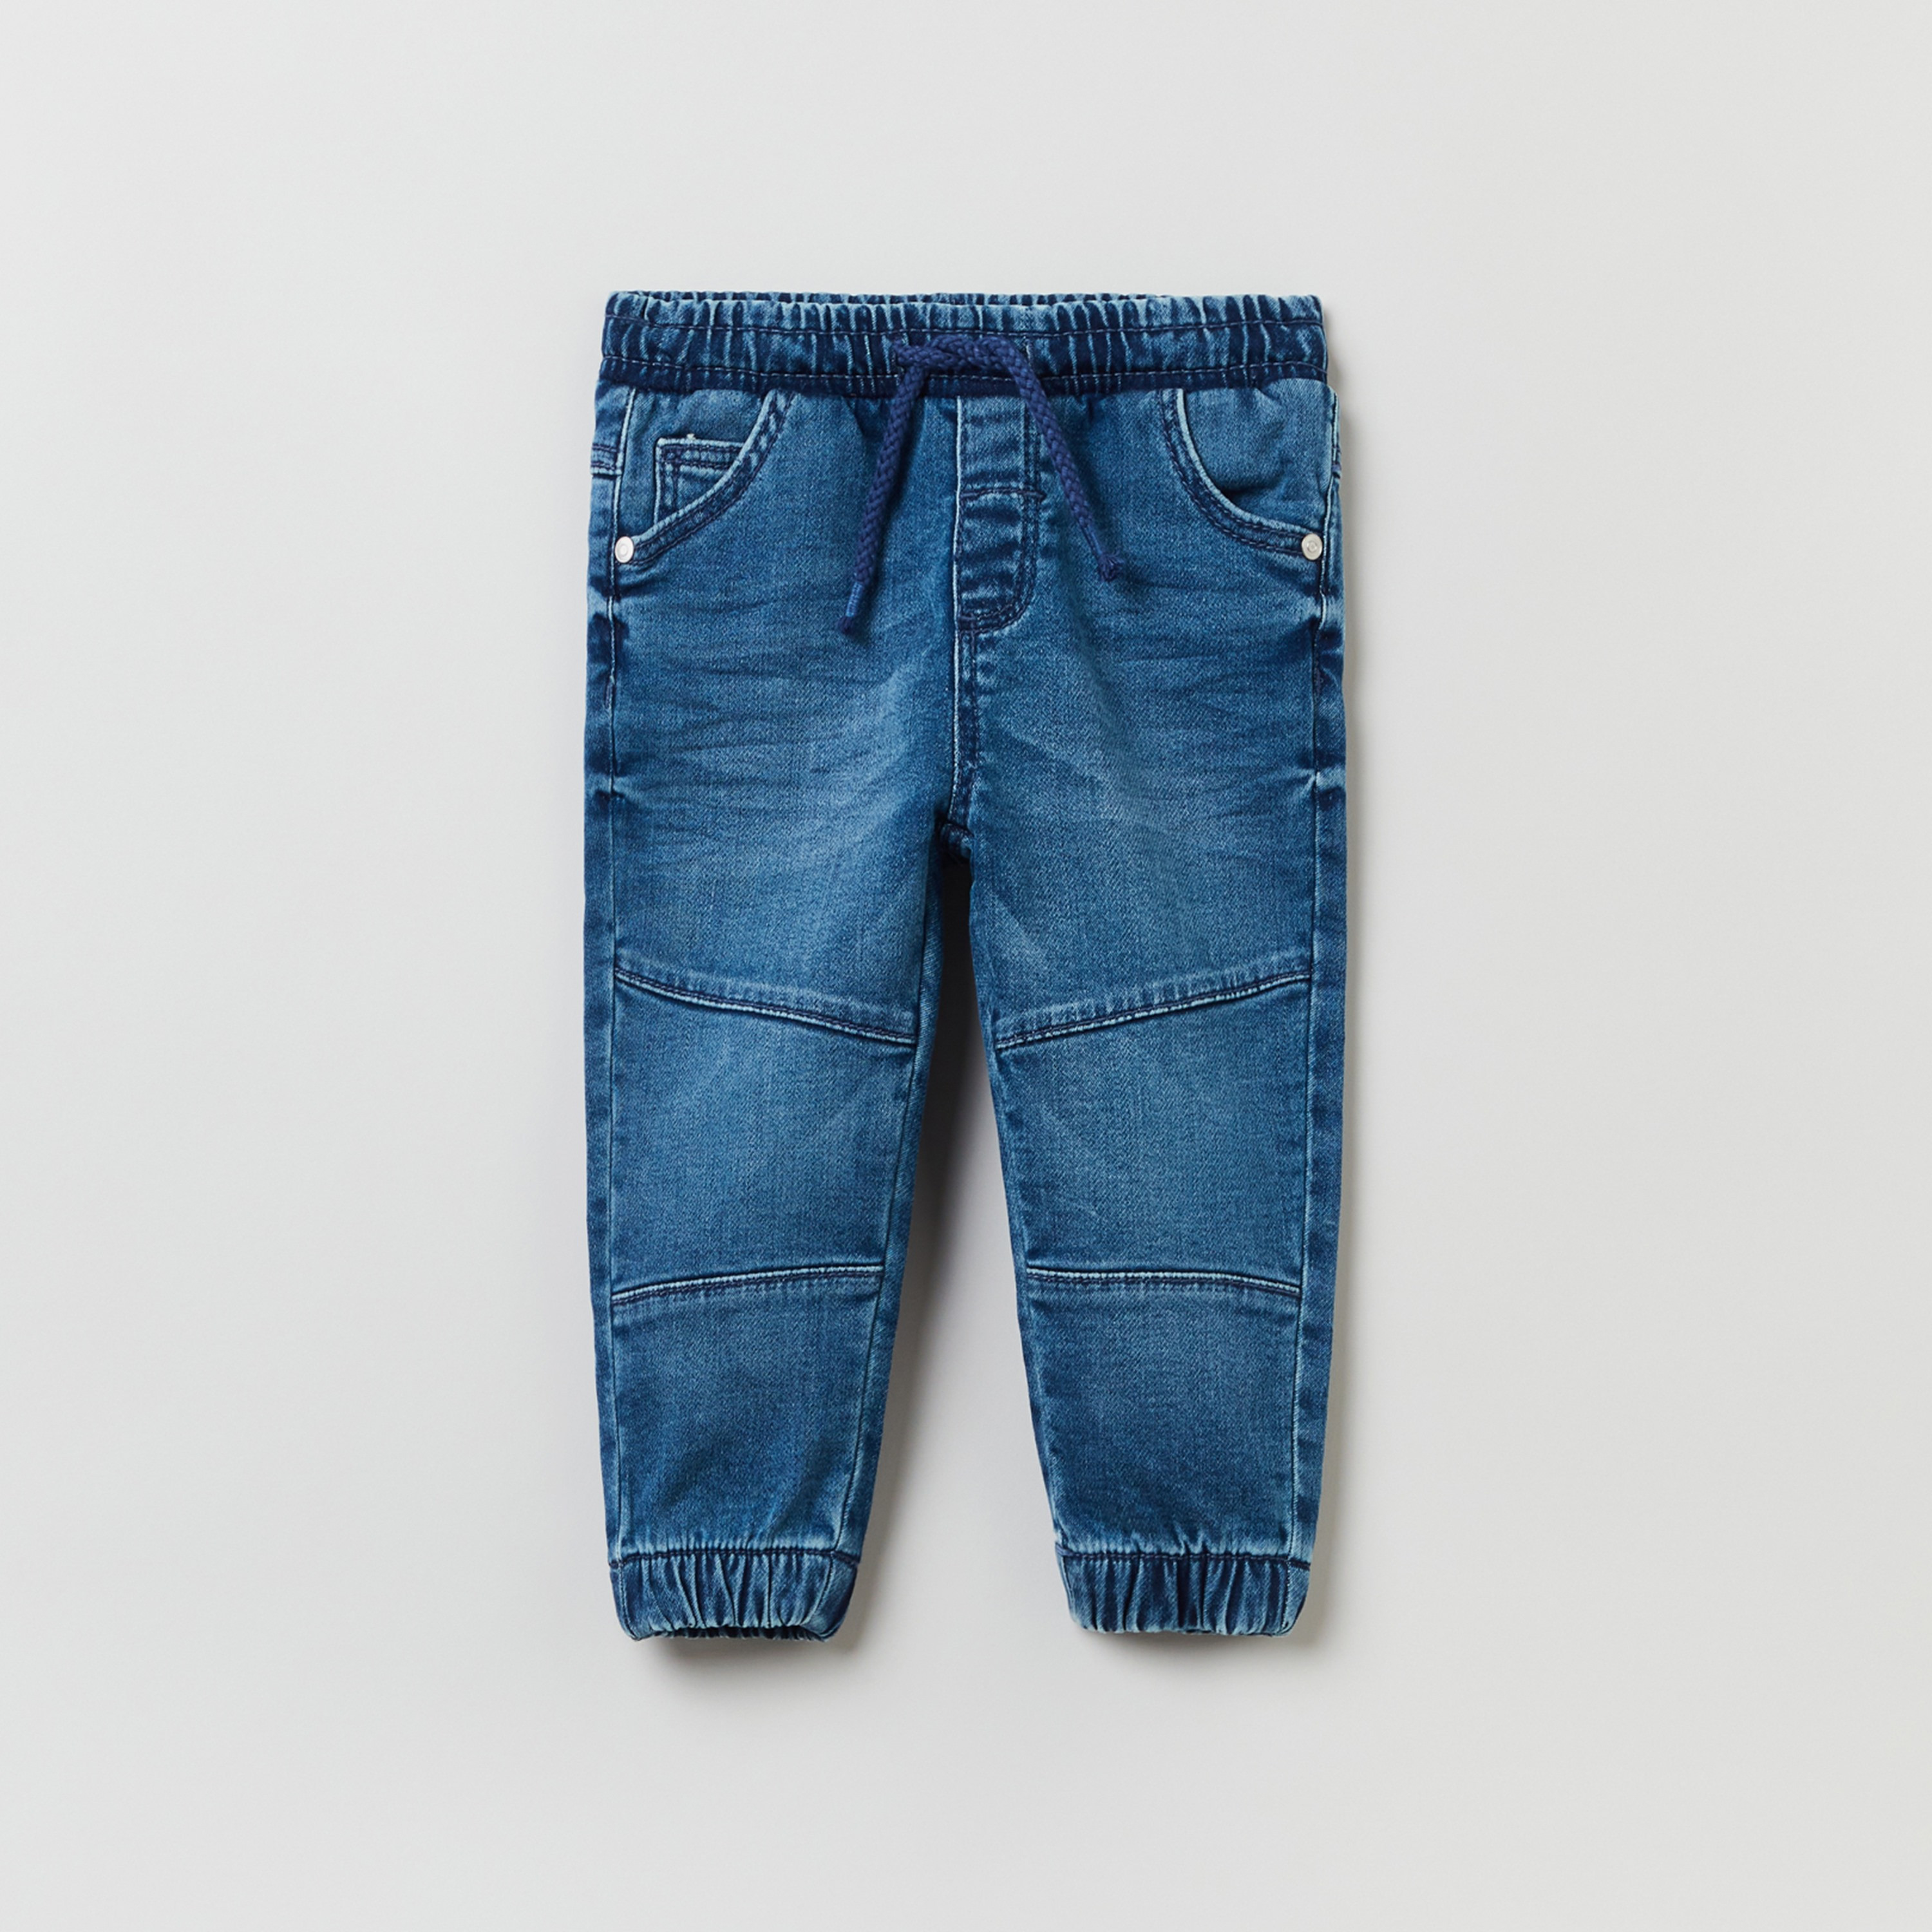 Kensie Ankle Biter Acid Wash French Terry Skinny Jeans, $68 | Nordstrom  Rack | Lookastic